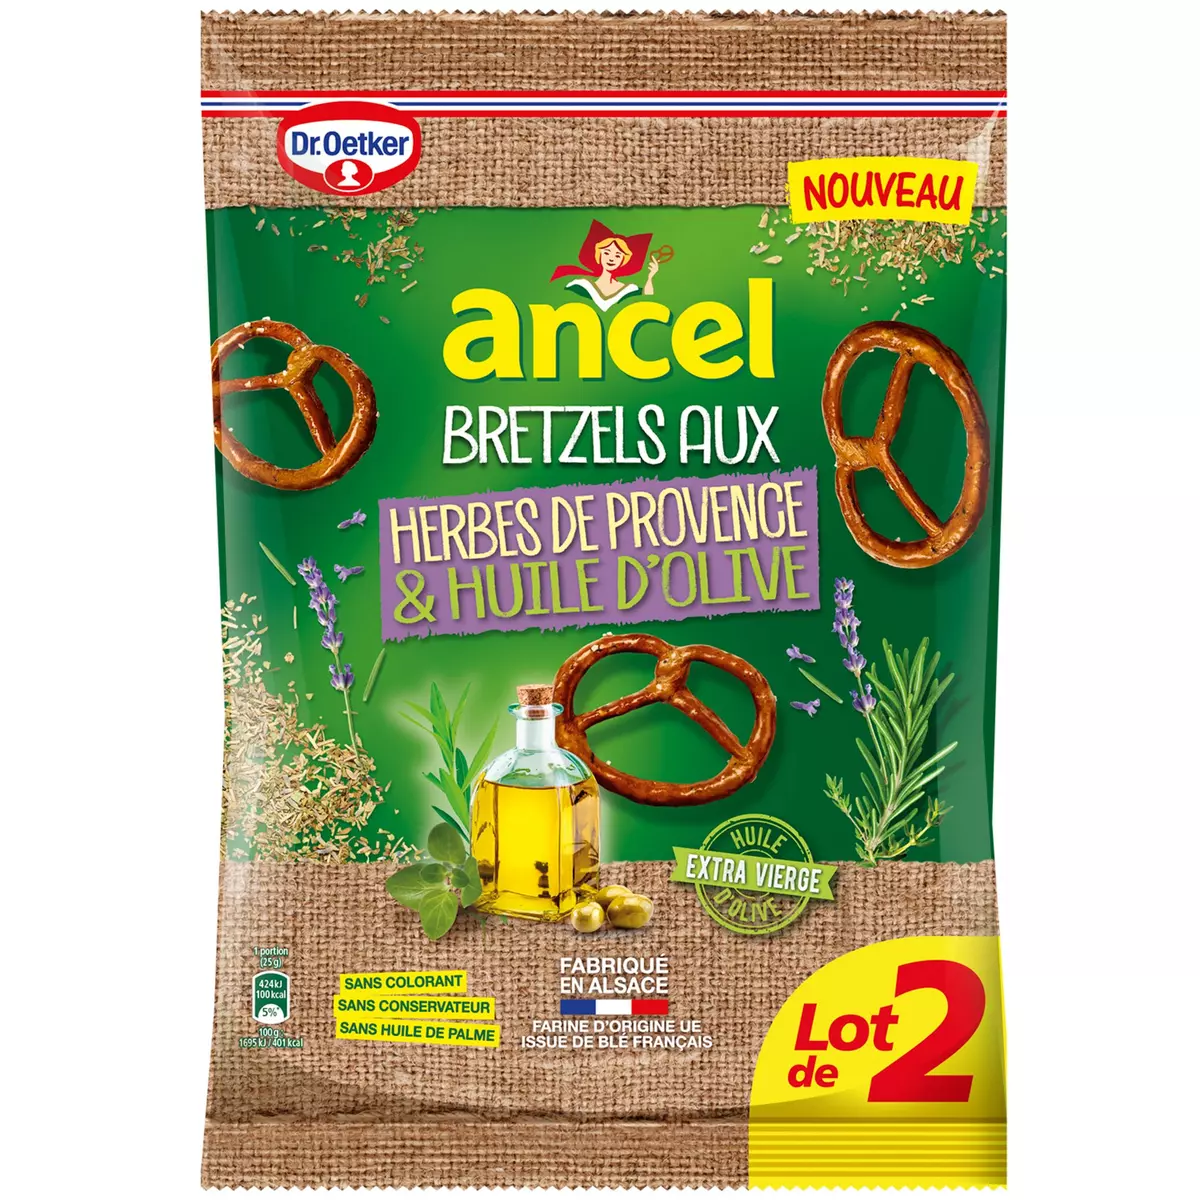 ANCEL Bretzels aux herbes de Provence et huile d'olive lot de 2 2x125g